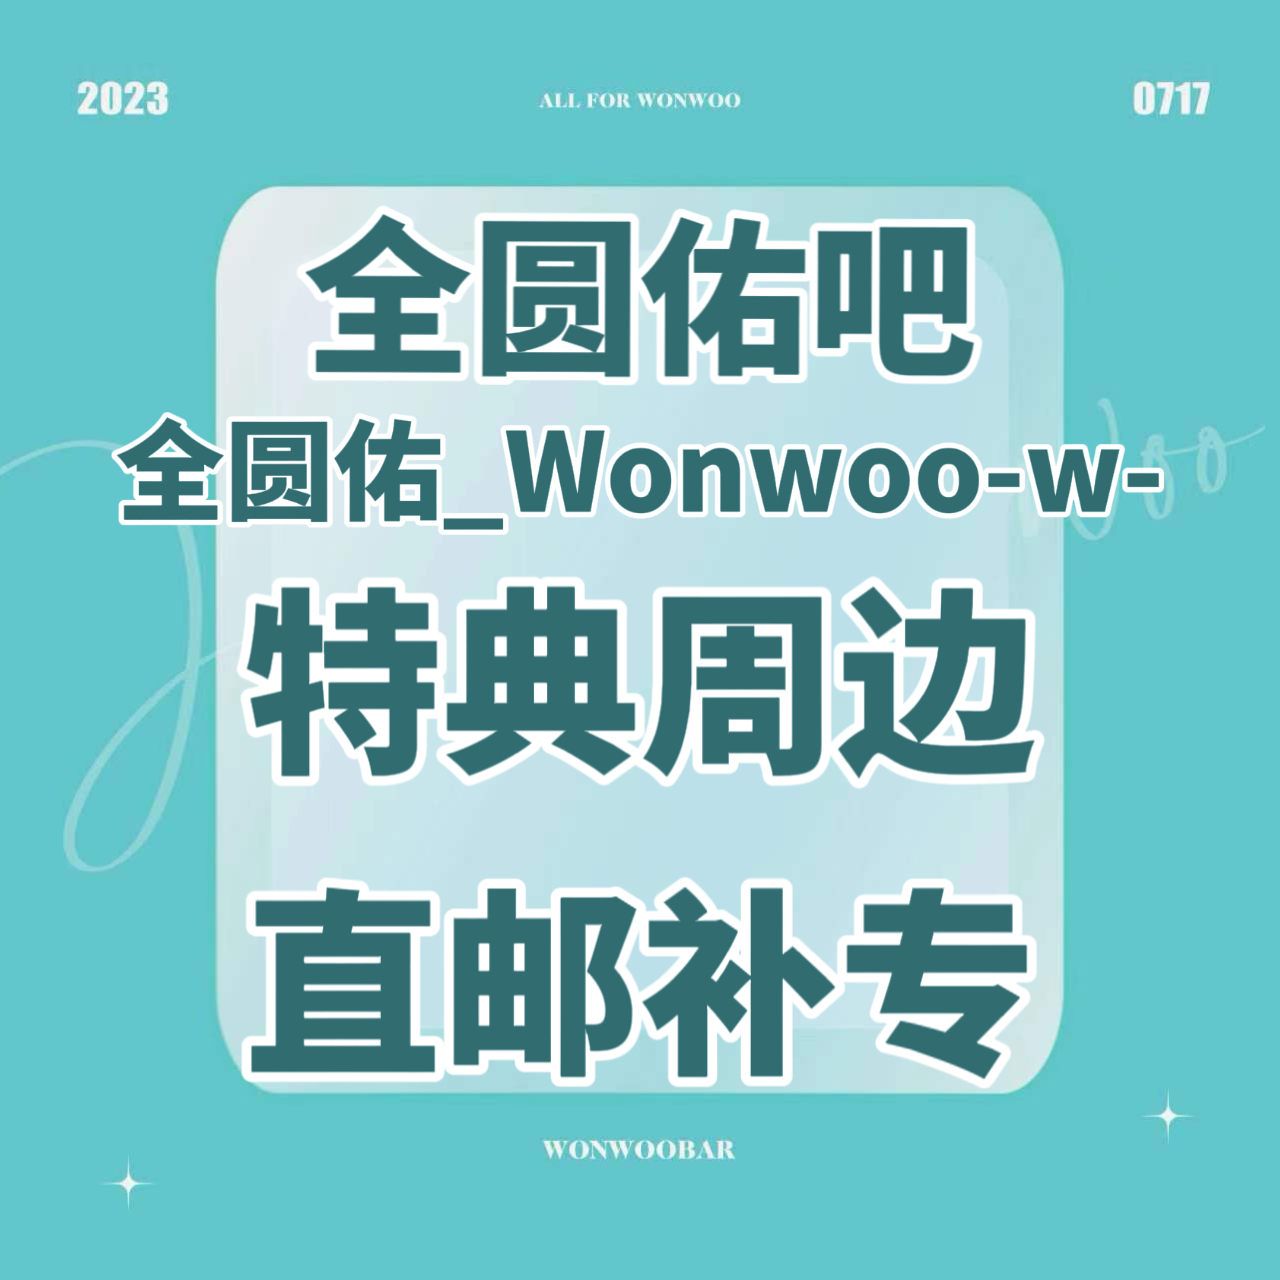 [补专 圆吧特典专] [Ktown4u Special Gift] [3CD 套装] *备注微店绑定手机号 SEVENTEEN - 迷你10辑 [FML]_全圆佑吧_WonwooBar